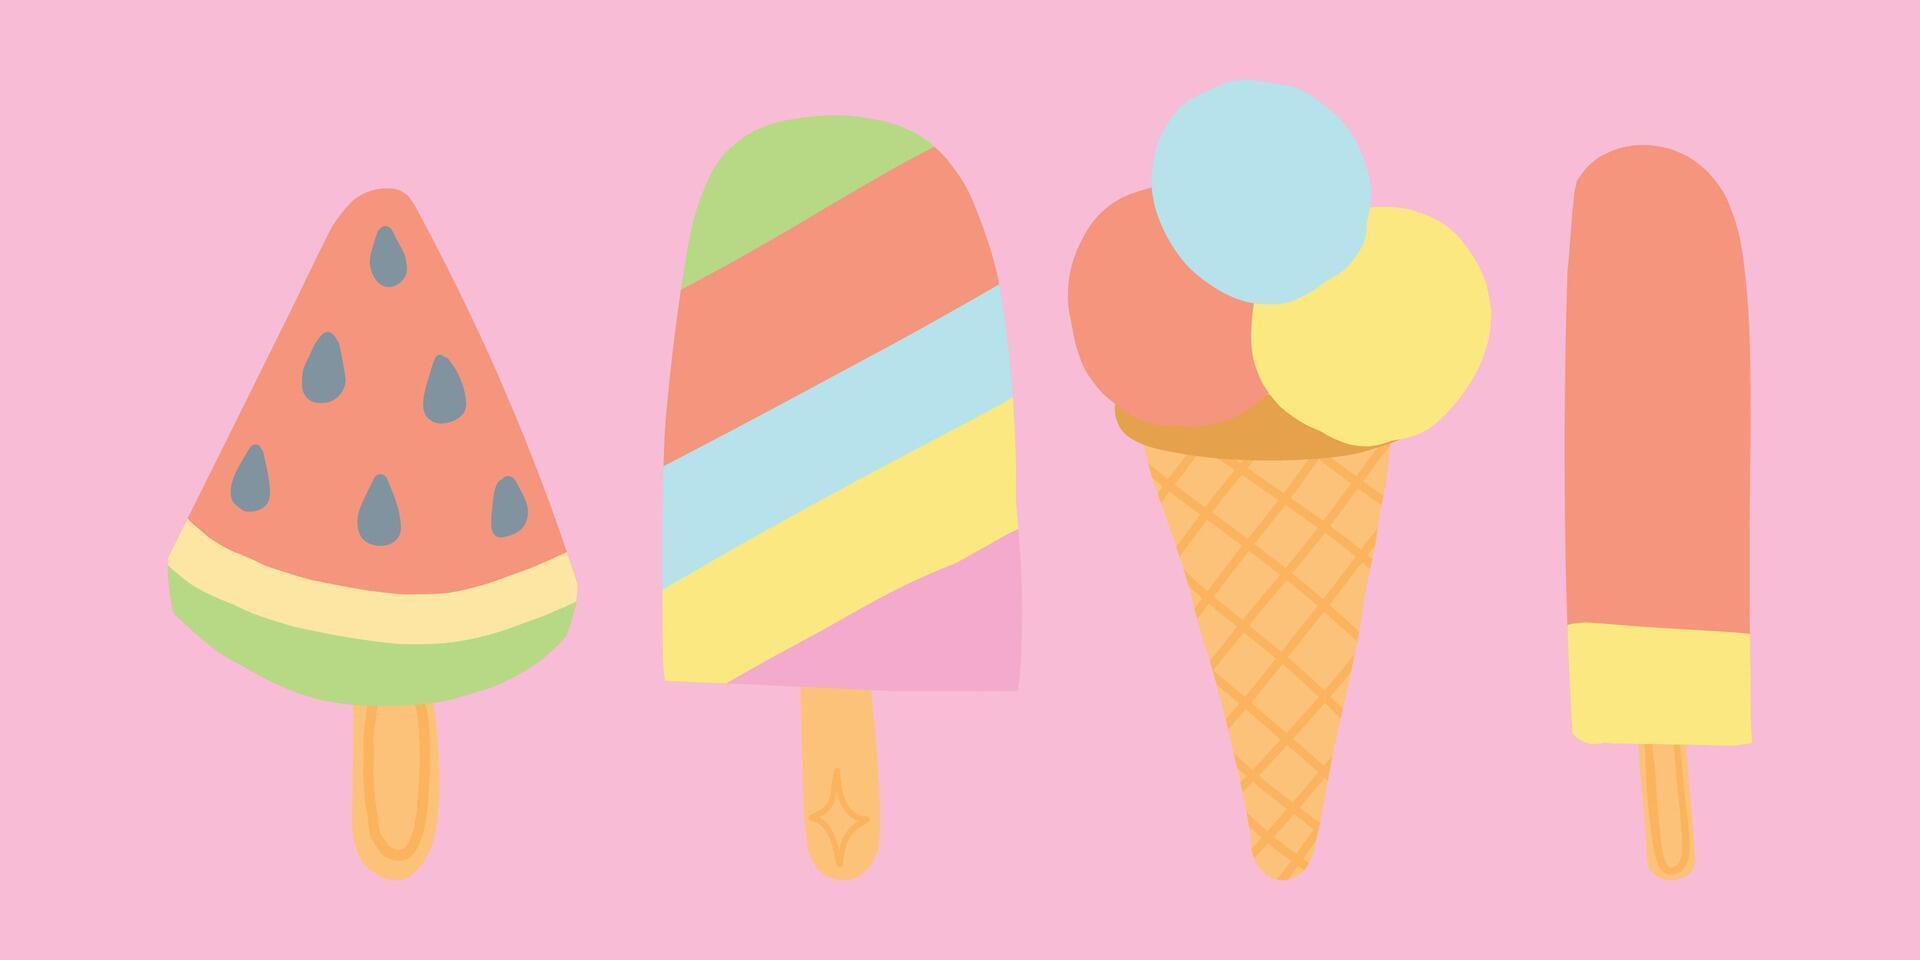 blandad platt design is krämer och is grädde koner på en pastell rosa bakgrund. inkluderar vattenmelon skiva, färgrik randig is grädde, och Mer. vektor